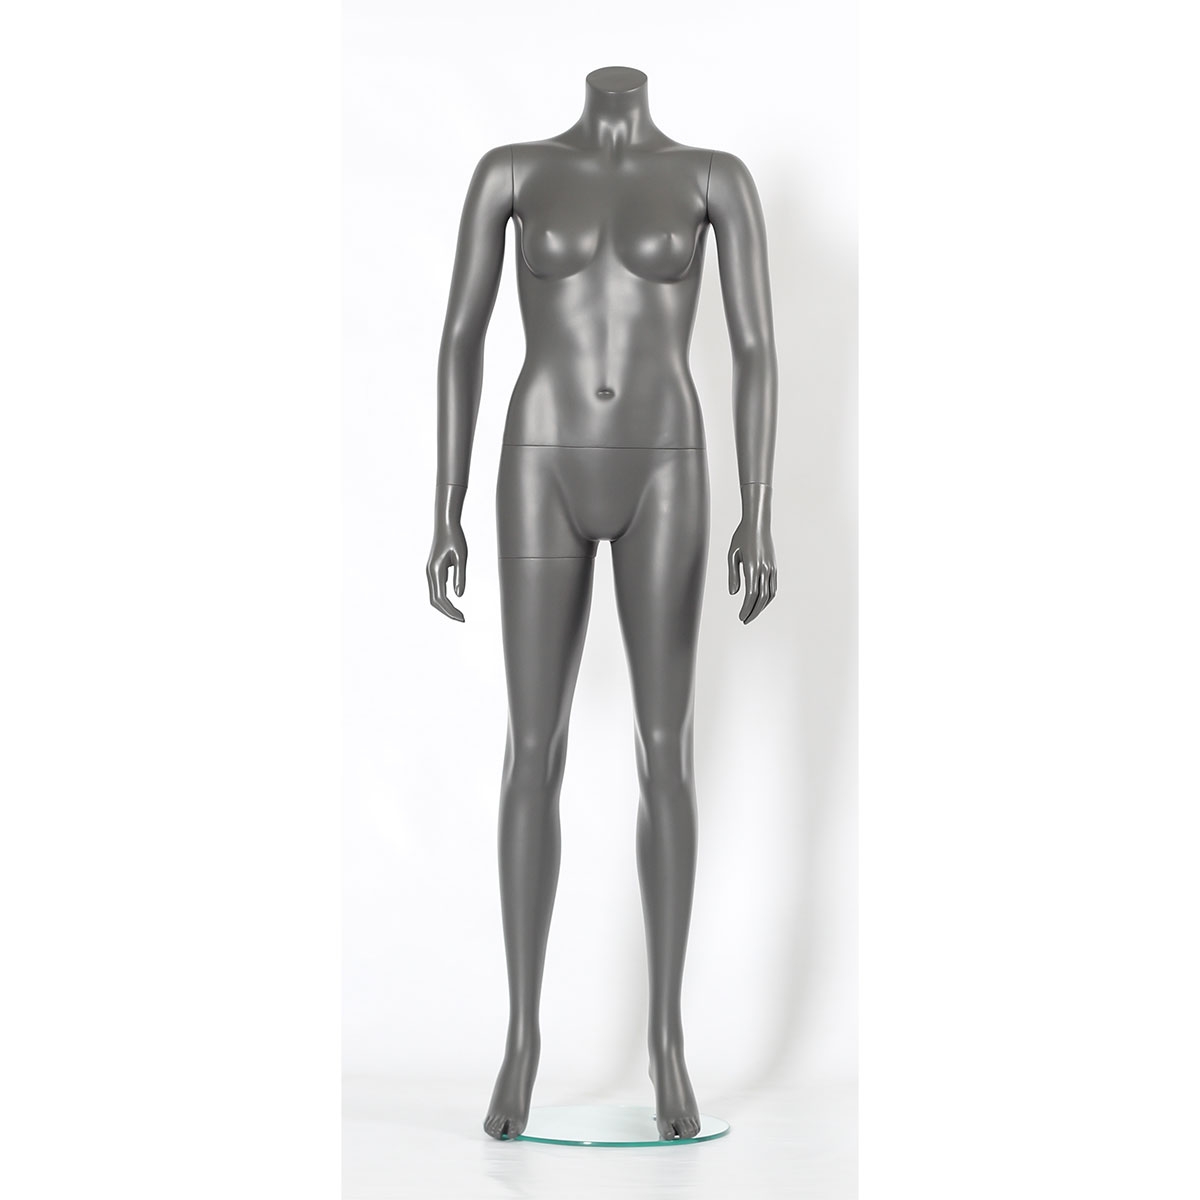 Mannequin Schaufensterpuppe Schaufensterfigur Weiblich inkl Glasstandplatte 